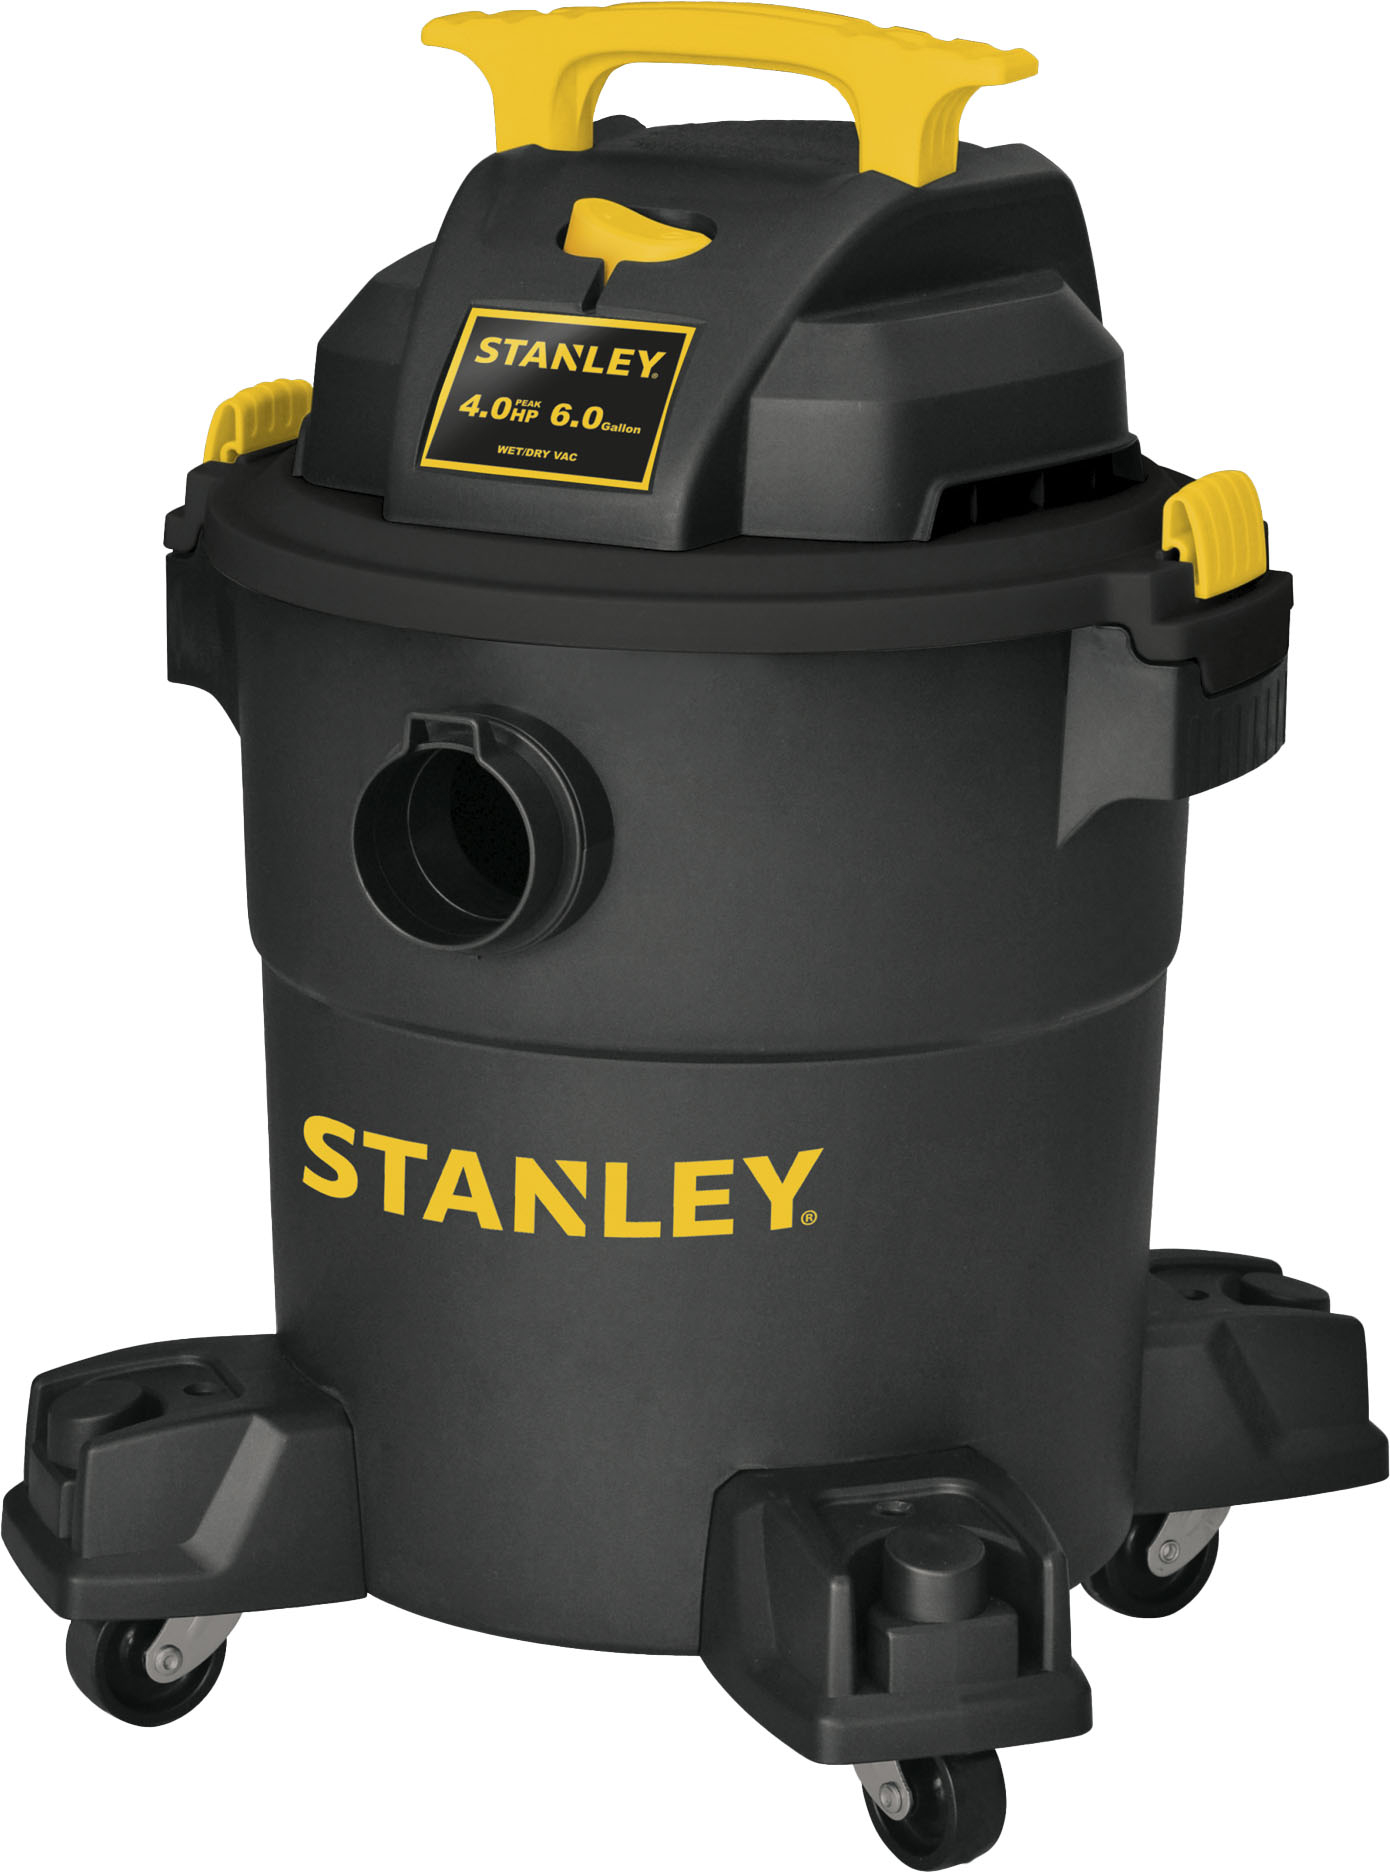 Stanley 6 Gallon Wet/Dry Vacuum 5.0- Peak HP Stainless Steel